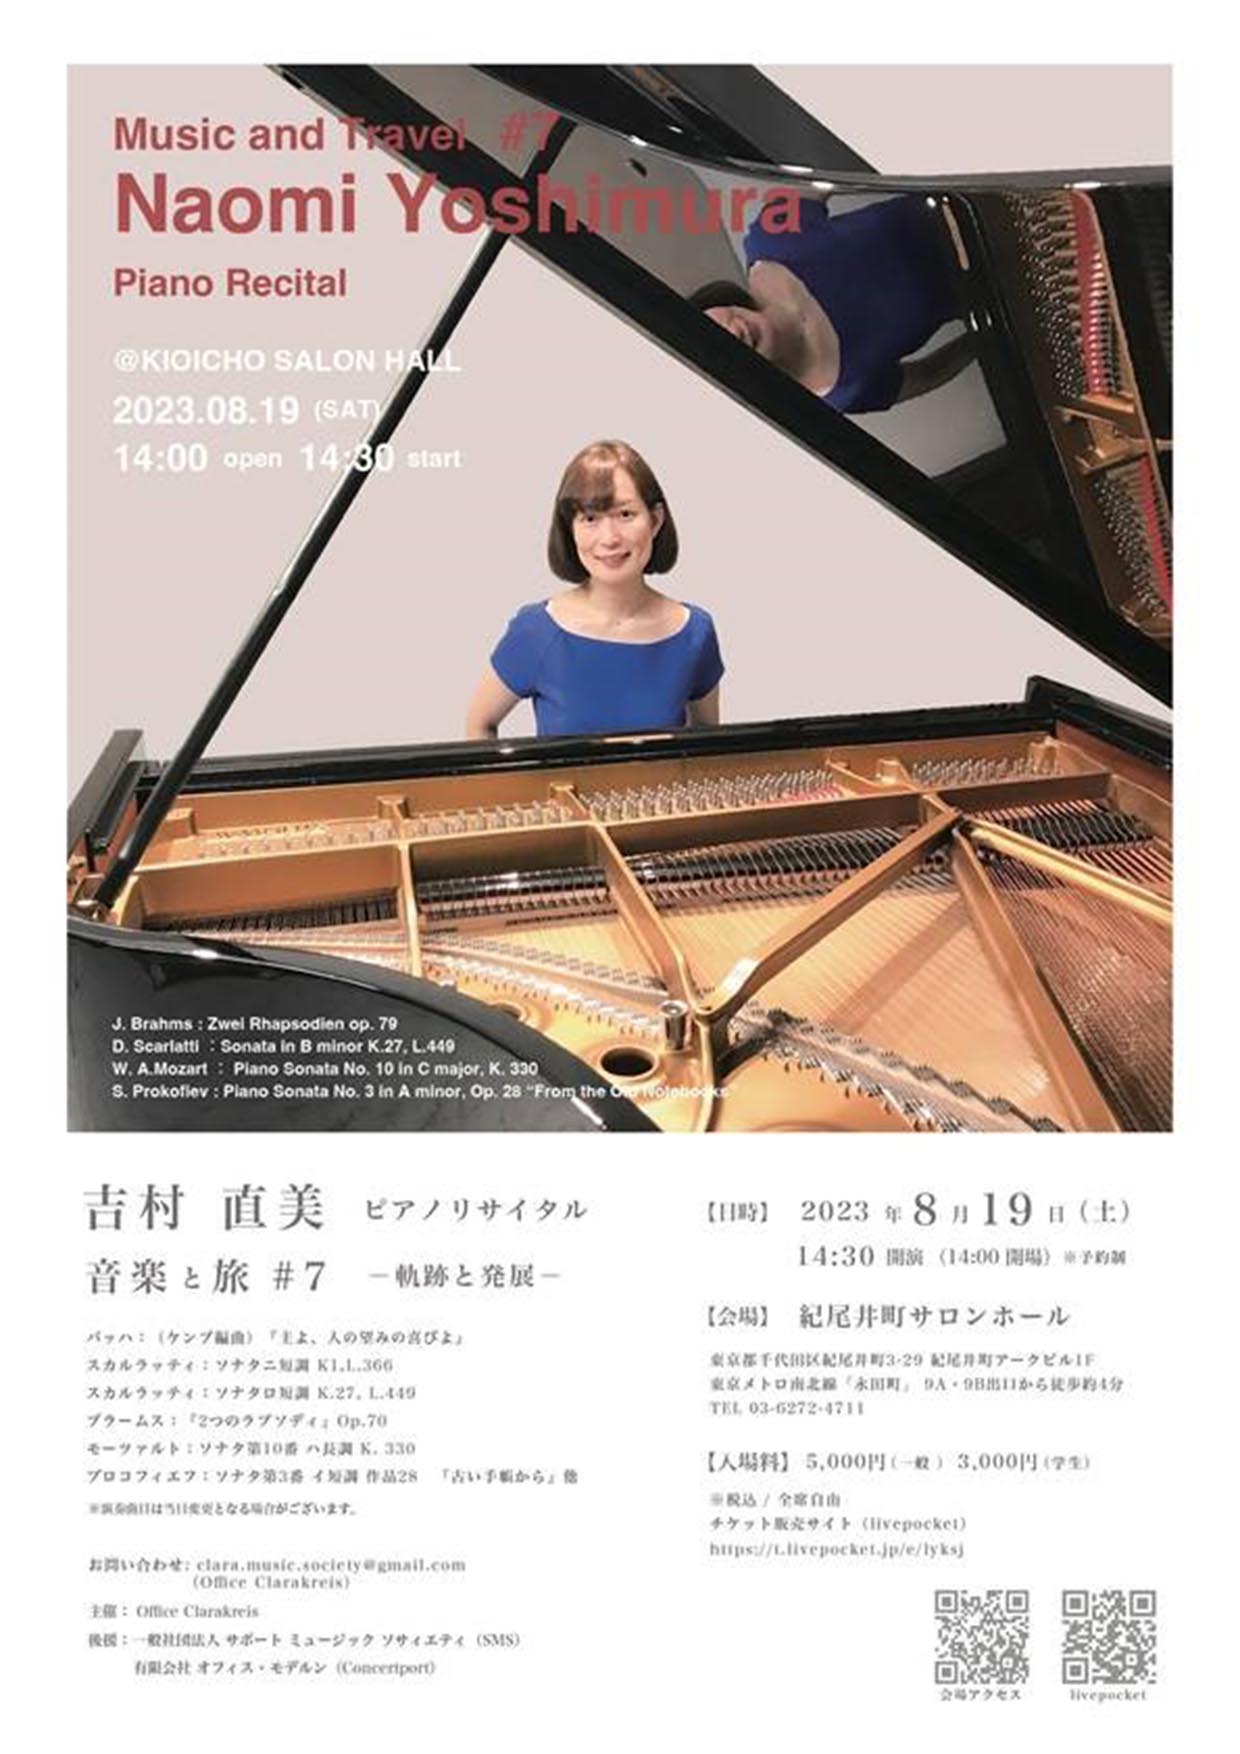 吉村直美ピアノリサイタル 音楽と旅#7 ―軌跡と発展―